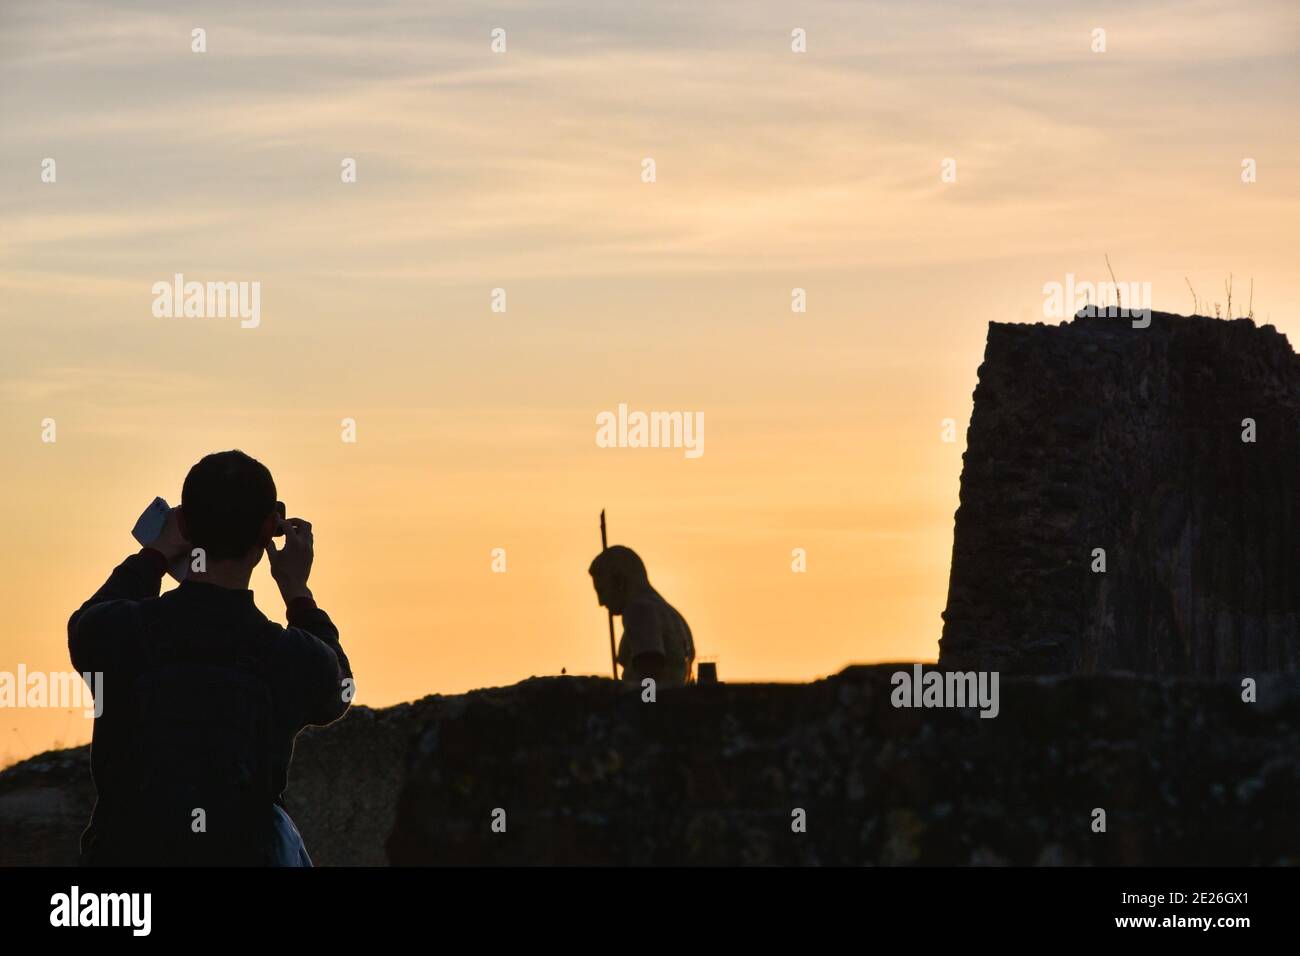 Ruinen von Pompeji. Junge Tourist mit Karte in der Hand Foto mit Smartphone von Pompeji Ruinen mit zerstörten Wand und Krieger Statue bei Sonnenuntergang. Stockfoto